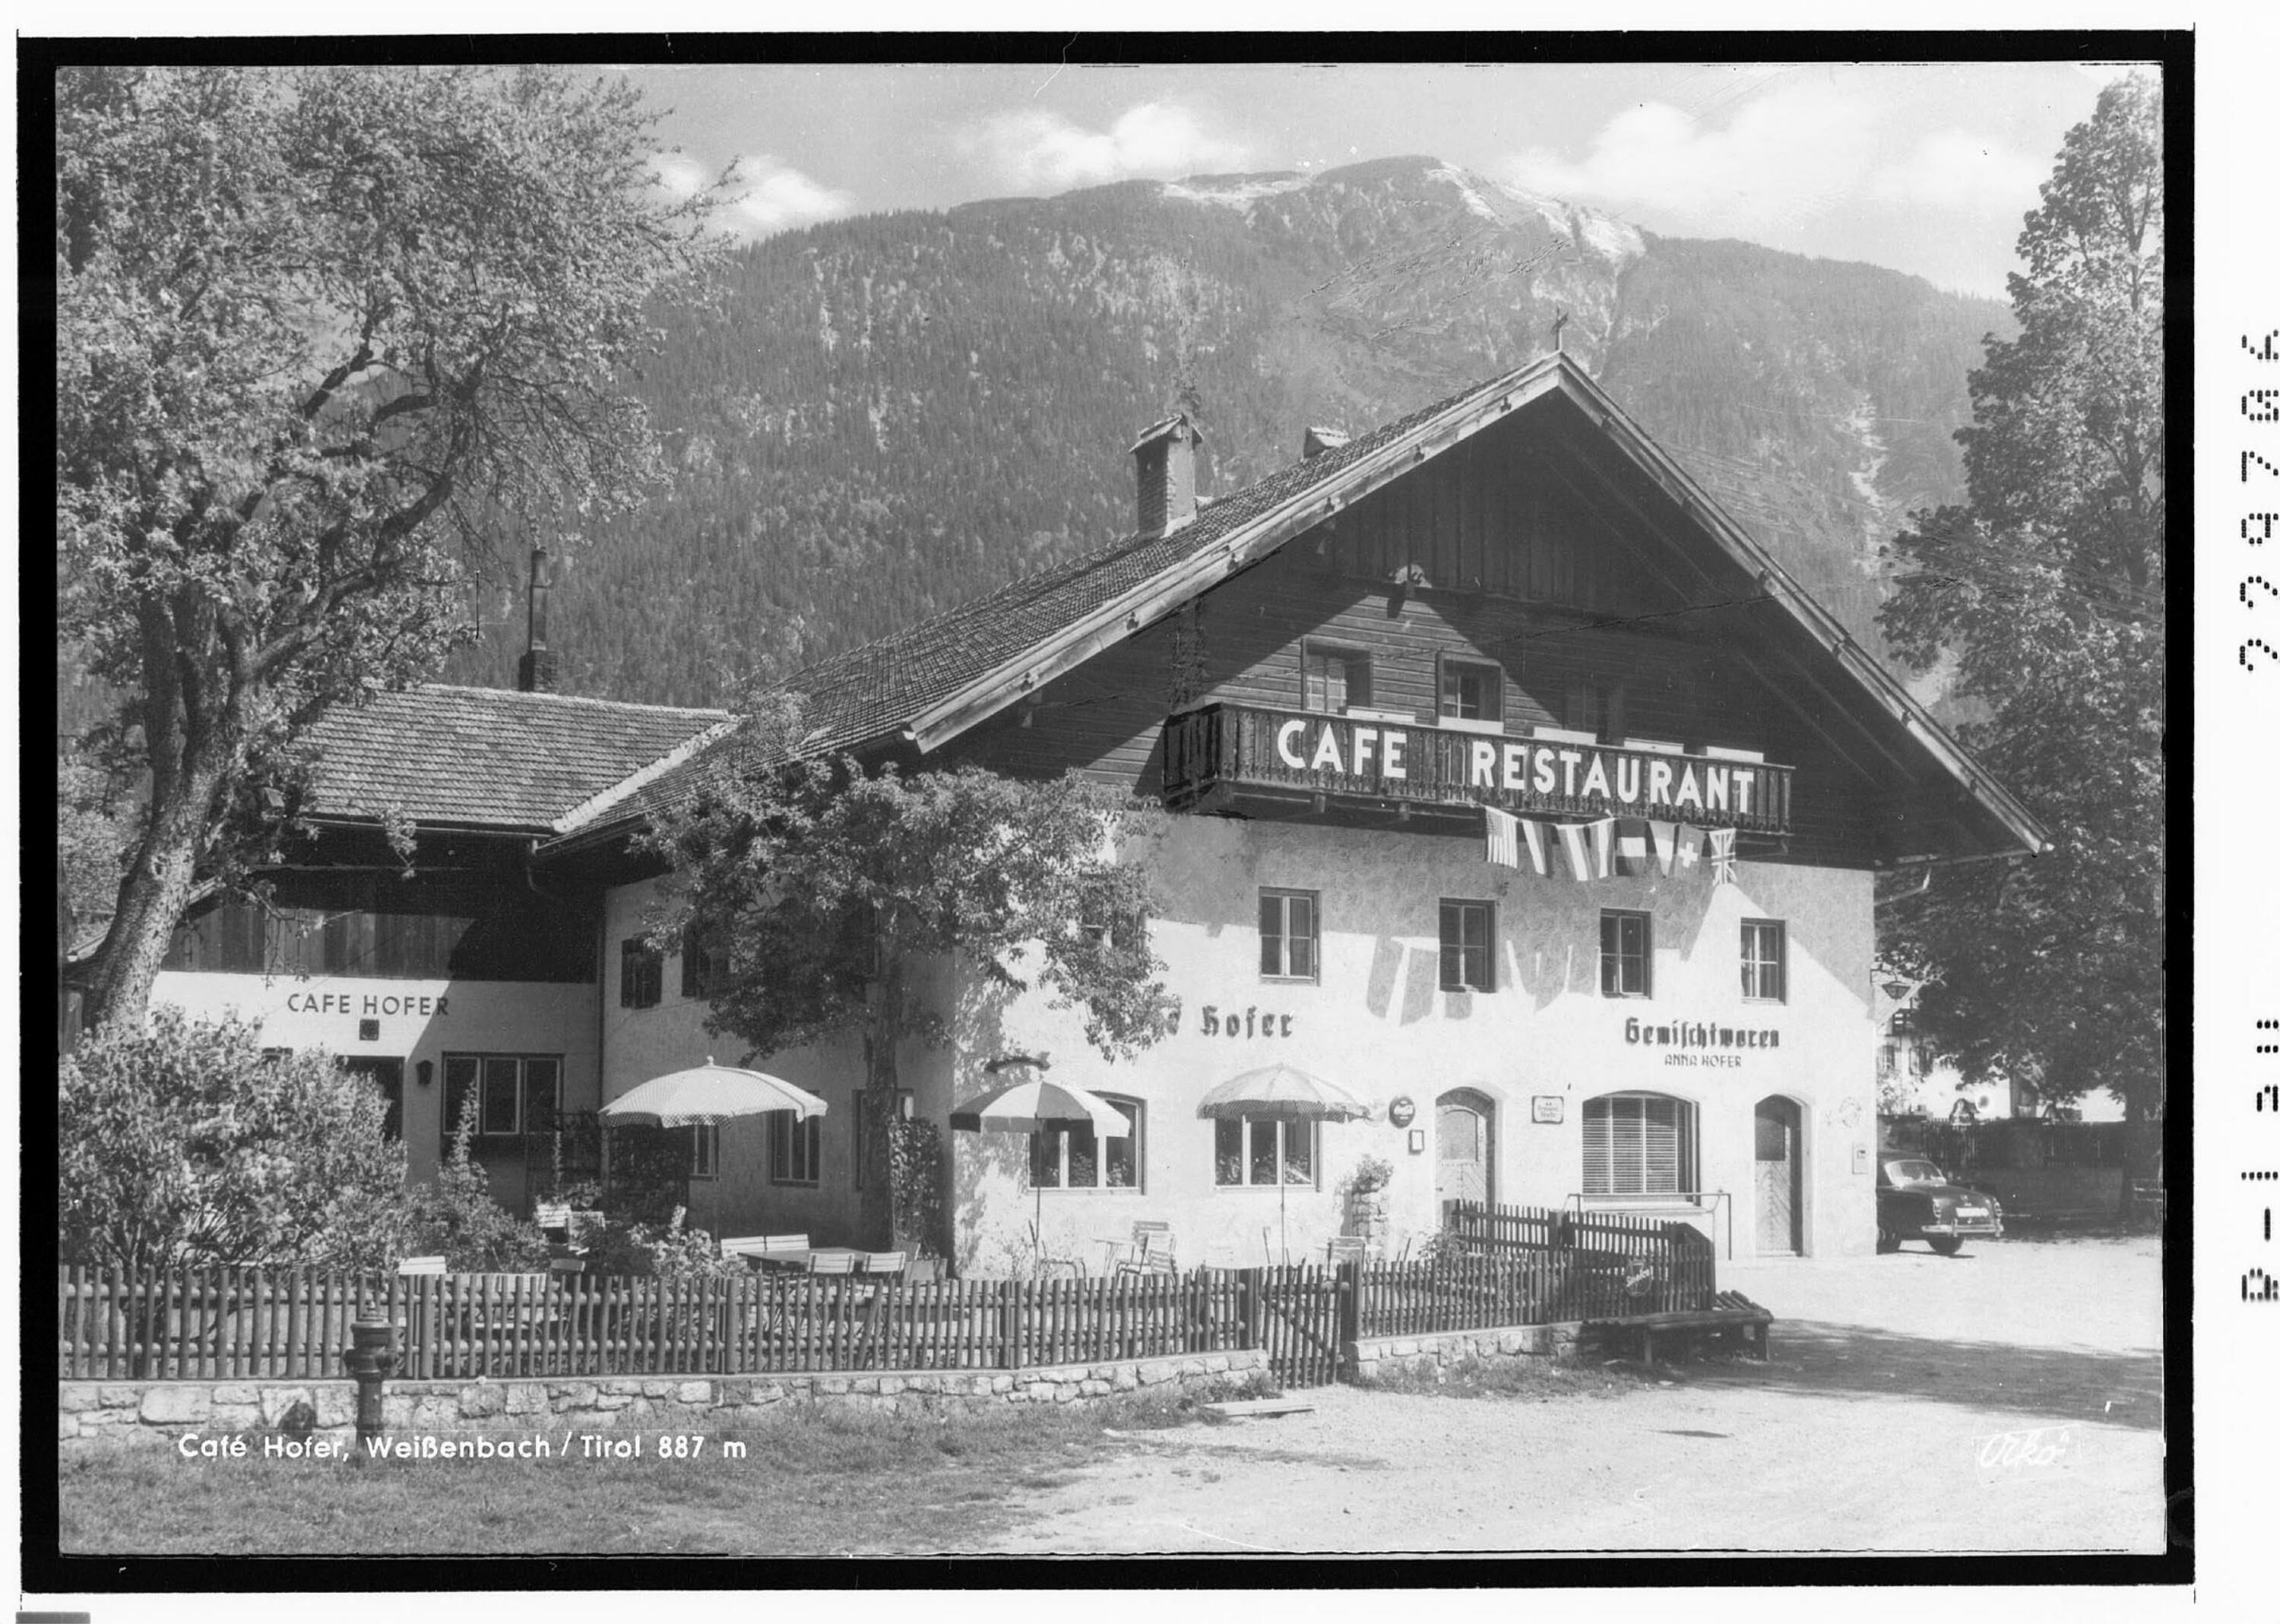 Cafe Hofer / Weissenbach / Tirol 887 m></div>


    <hr>
    <div class=